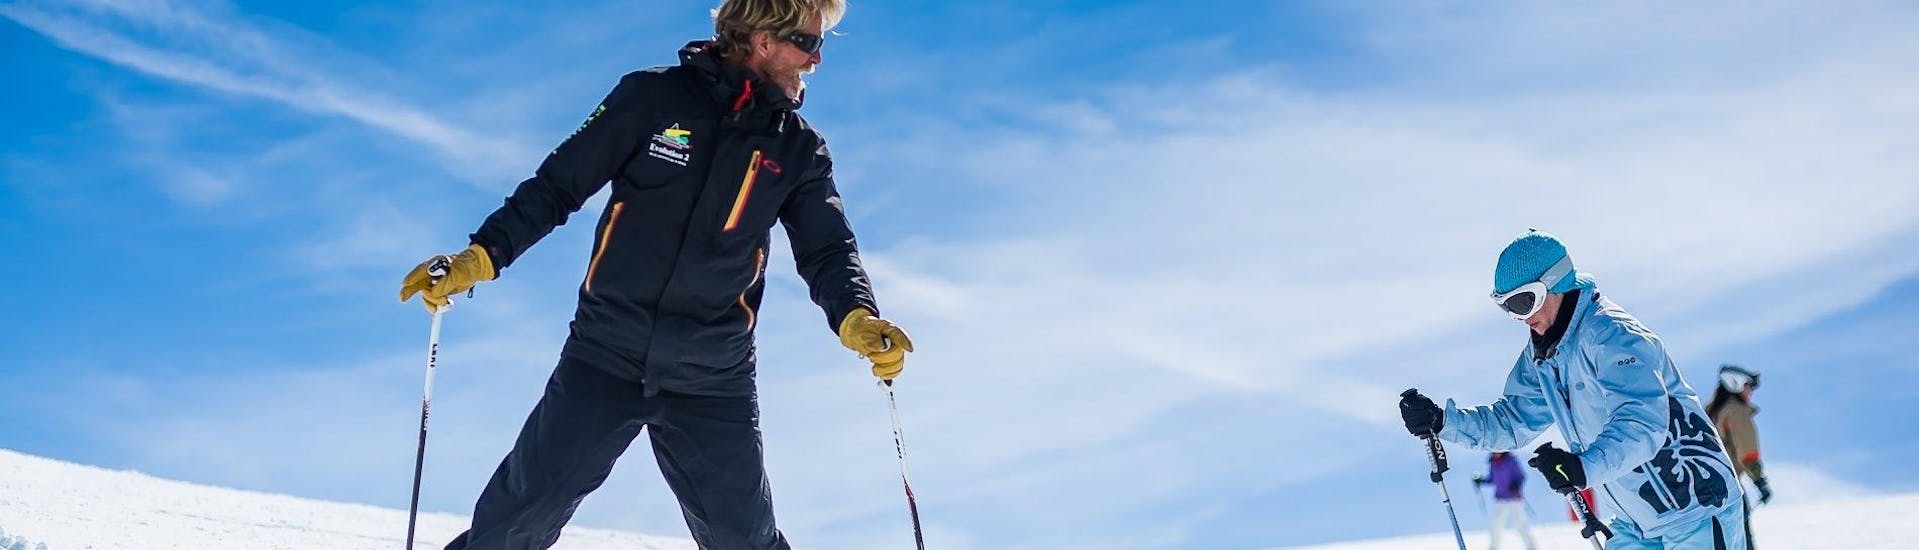 Sous la supervision d'un moniteur de ski de l'école de ski Evolution 2 Val d'Isère un skieur améliore sa technique pendant son Cours particulier de ski pour Adultes - Basse saison.